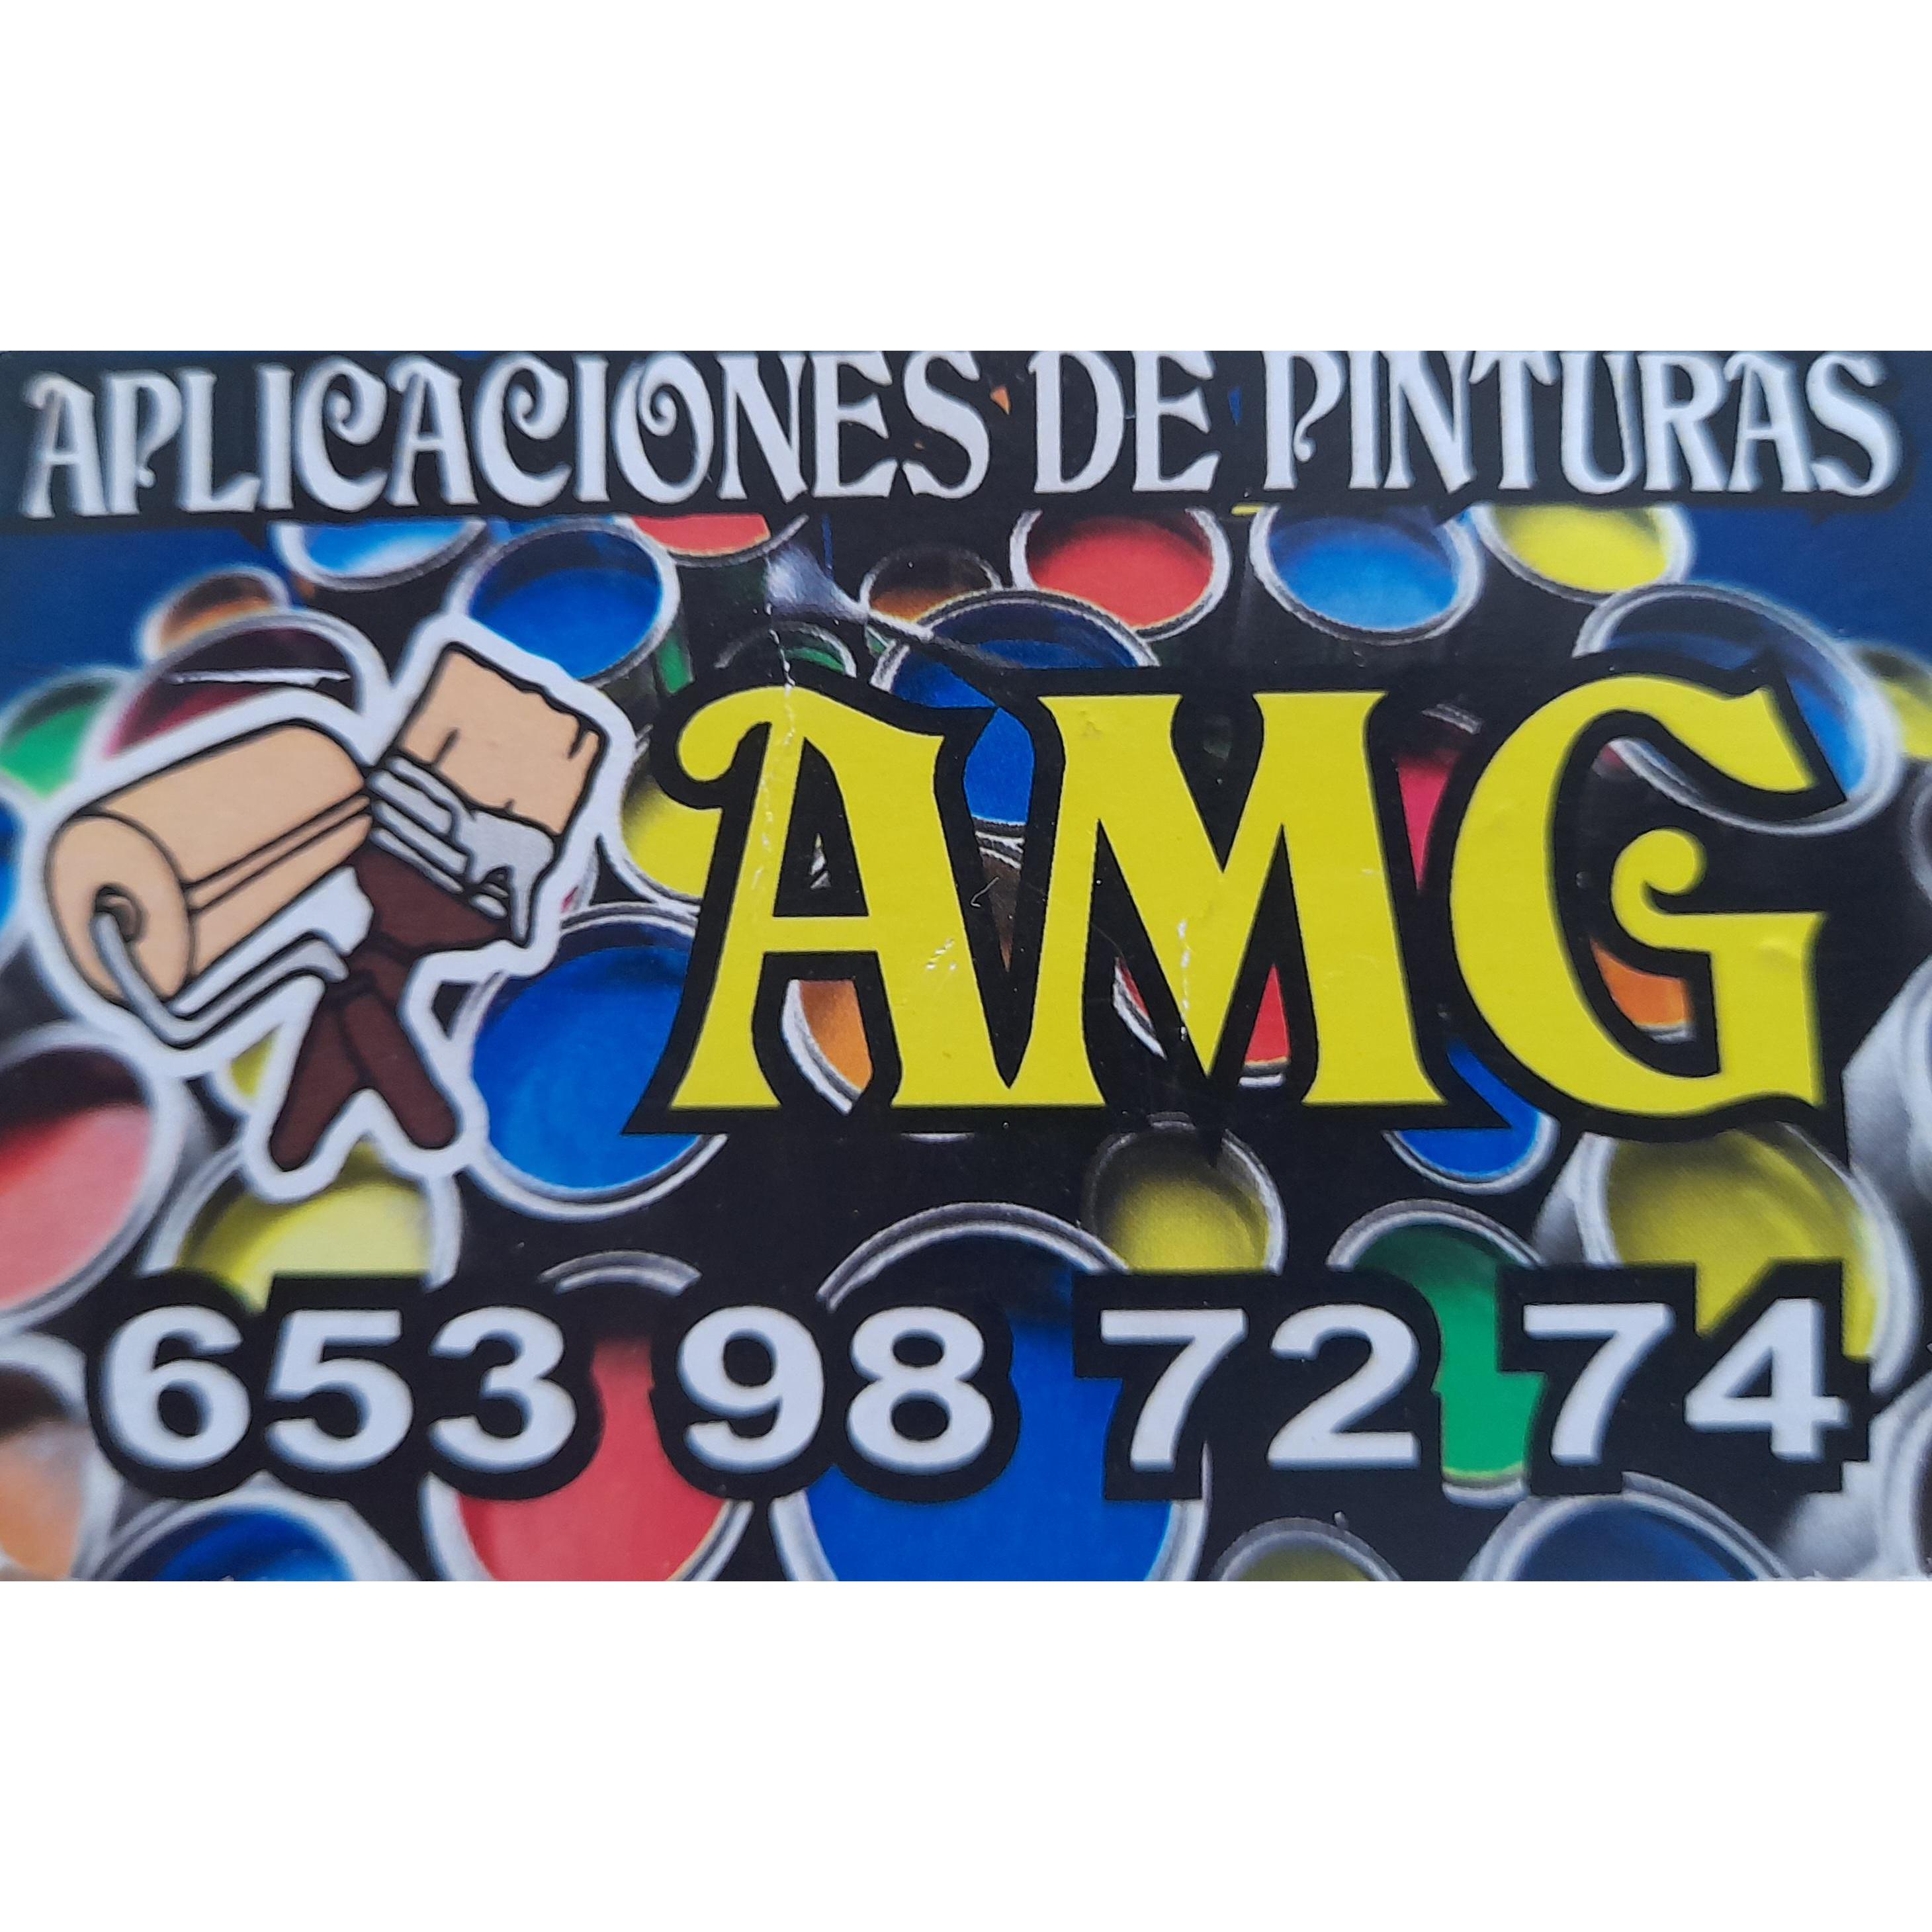 Pintor Amg Aljaraque-Huelva Aljaraque